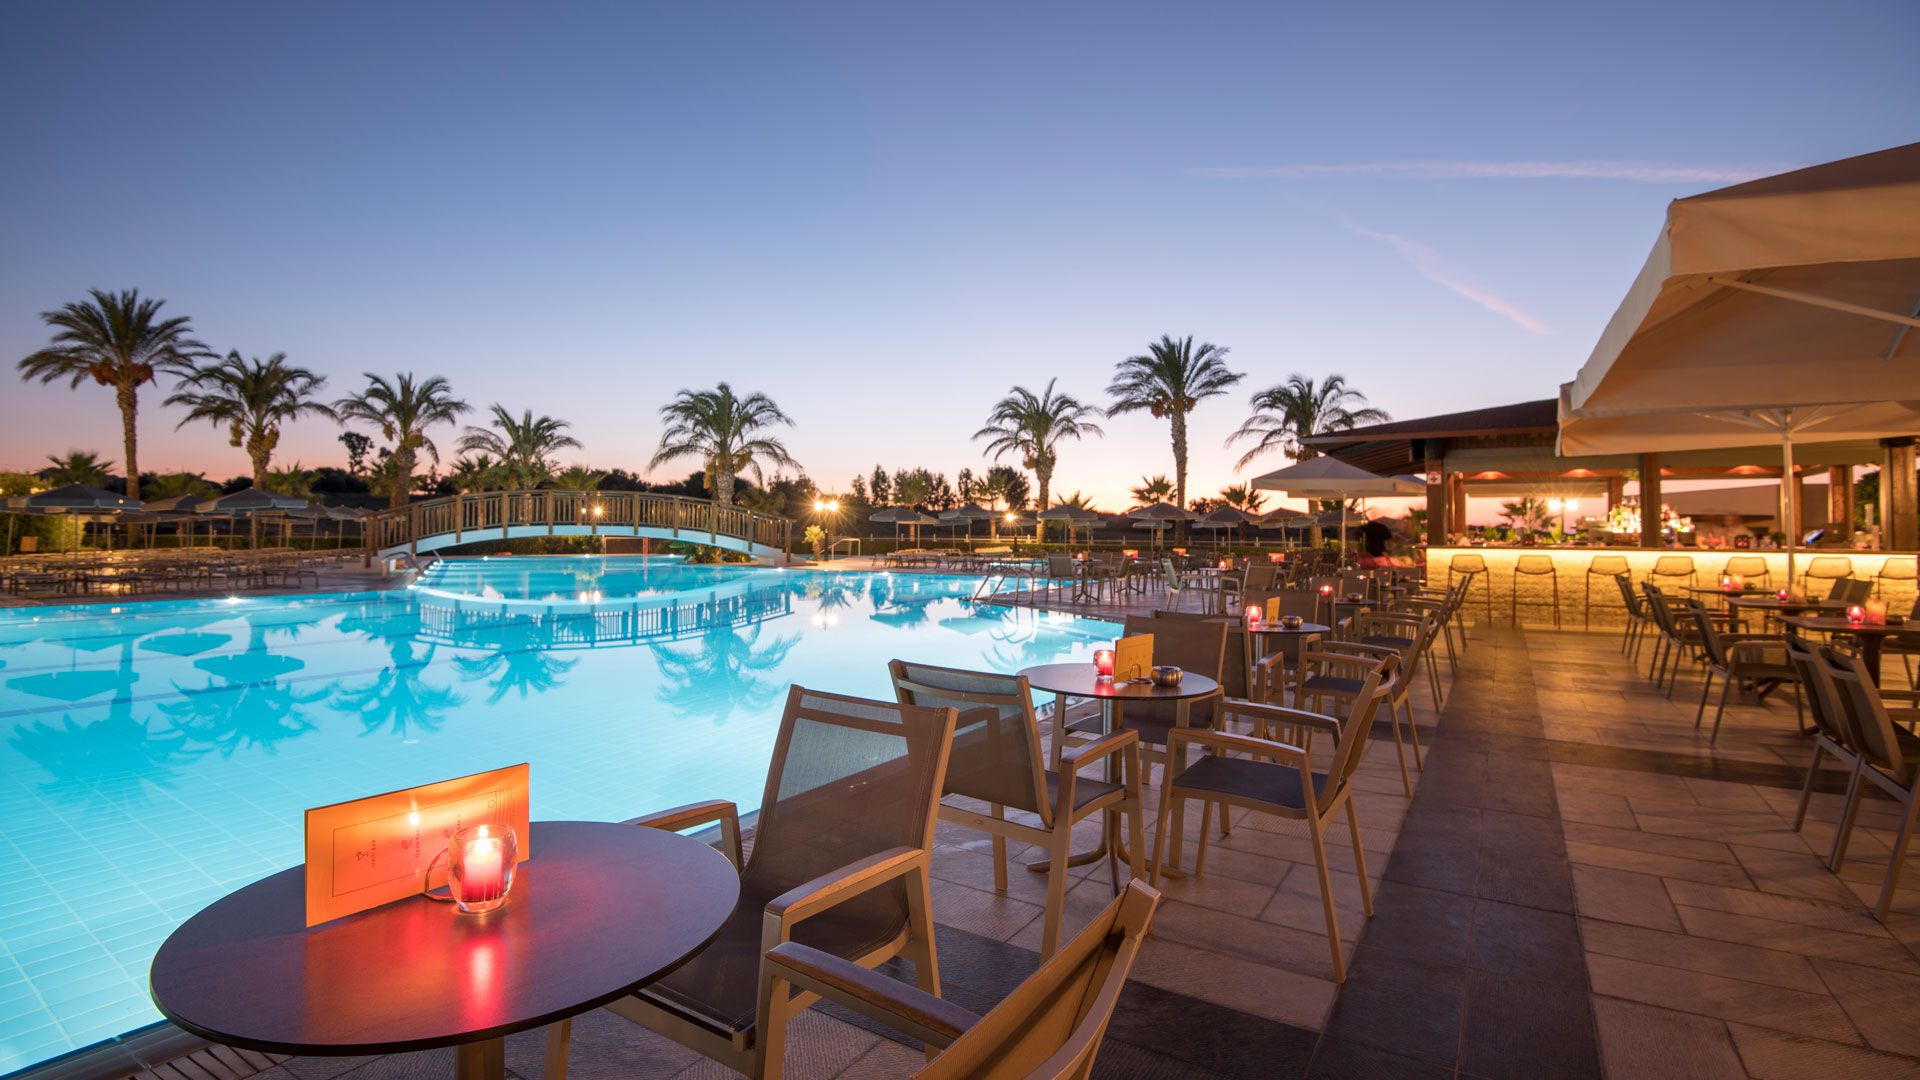 Το Ξενοδοχείο HORIZON BEACH RESORT 4+* στο Μαστιχάρι ζητά προσωπικό για την σεζόν 2022